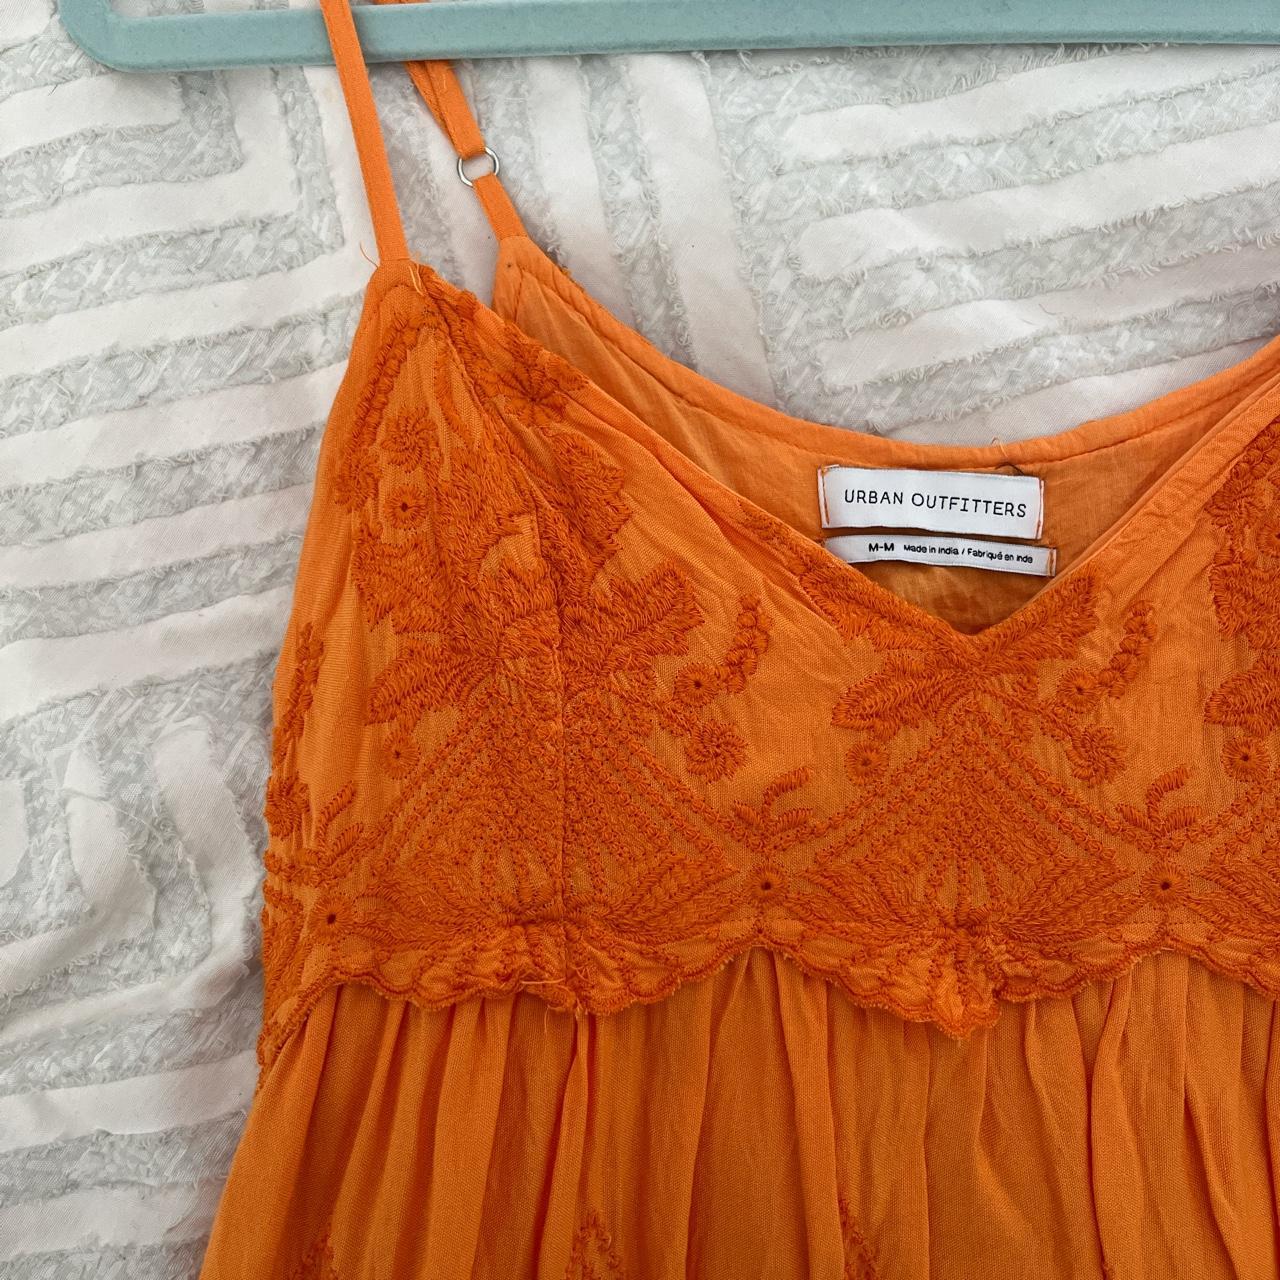 Urban Outfitters Women's Orange Dress | Depop